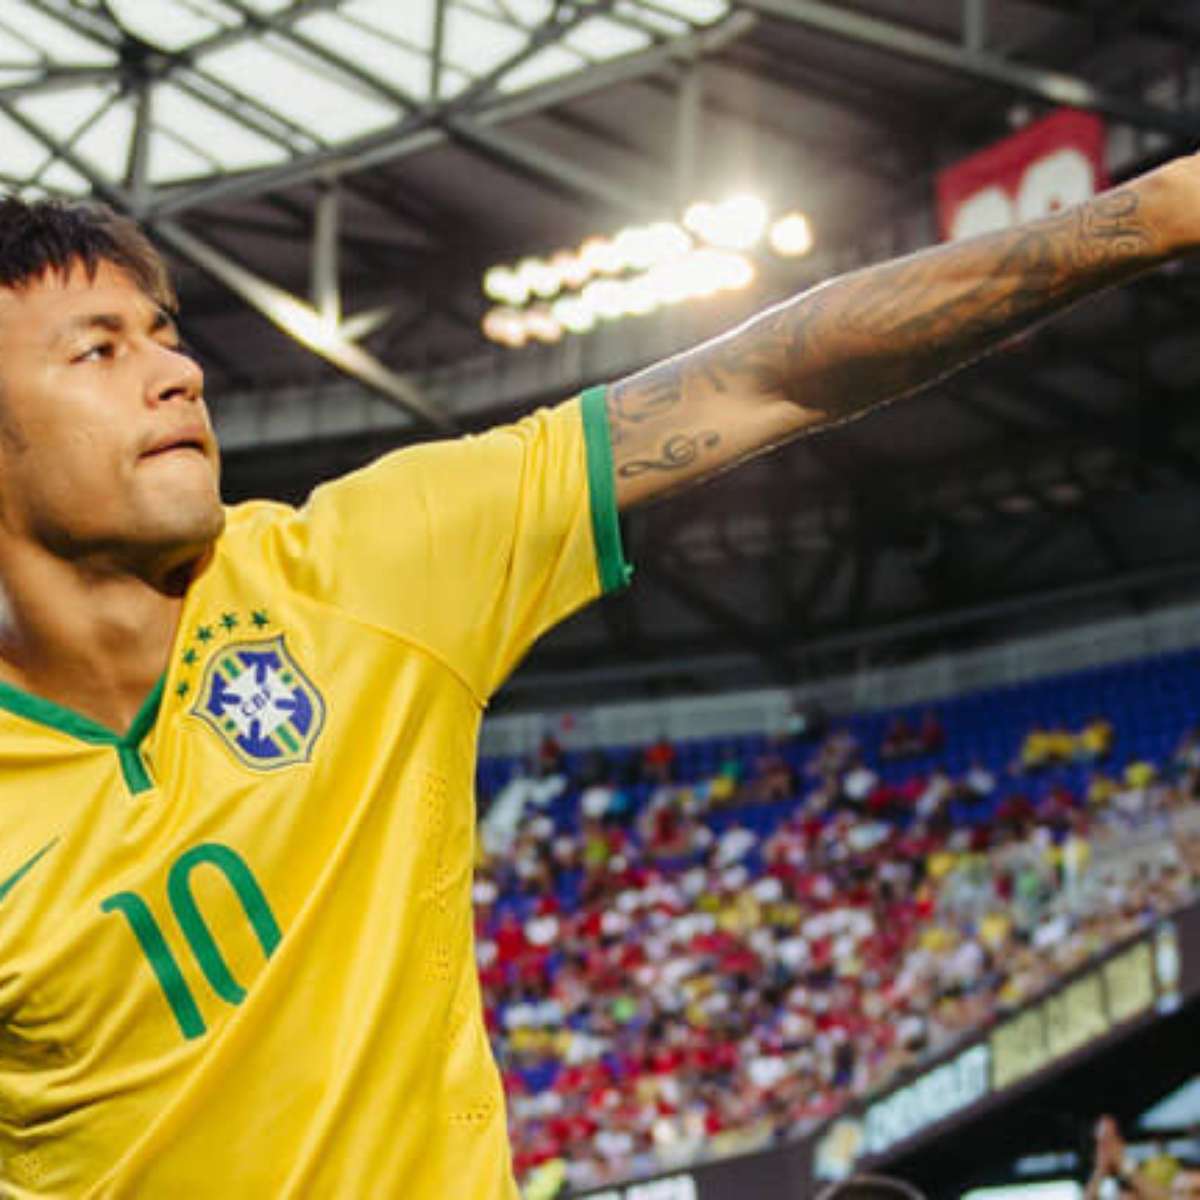 Neymar Legend: Vale R$ 9.000? É pra colar? Veja o que fazer e